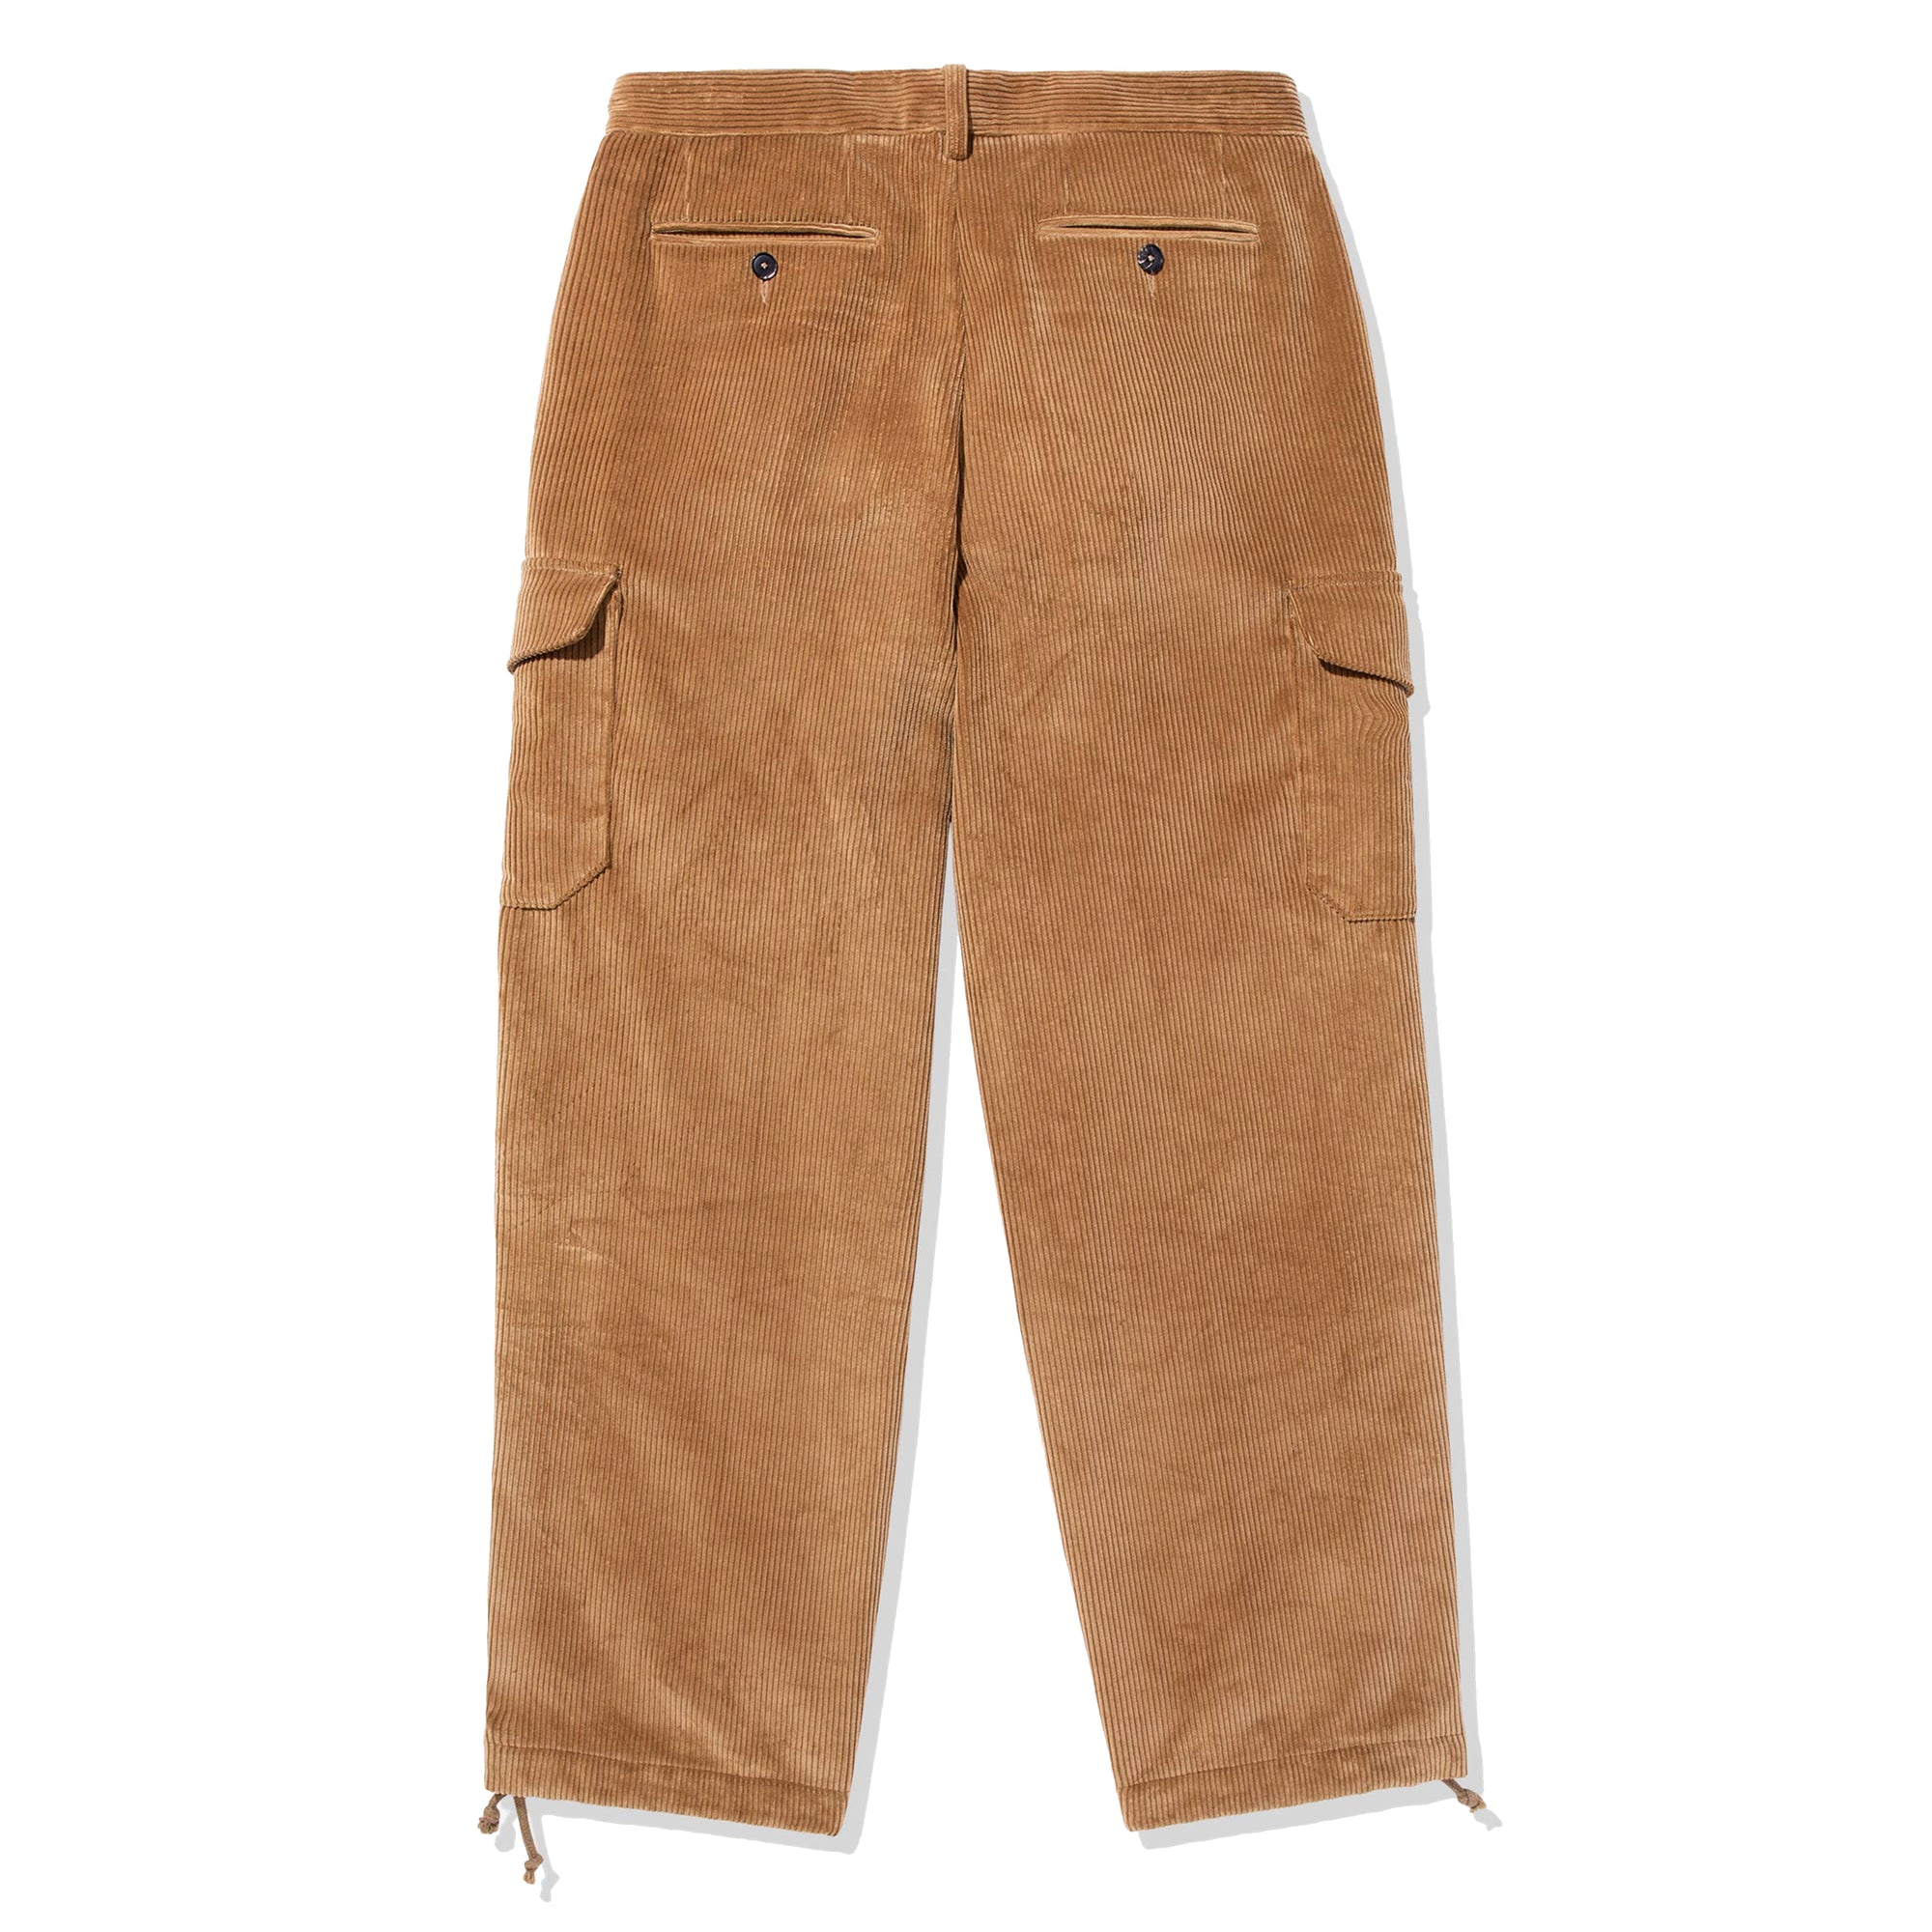 Noah - Barbour Corduroy Cargo Pants - (Tan) – DSMNY E-SHOP